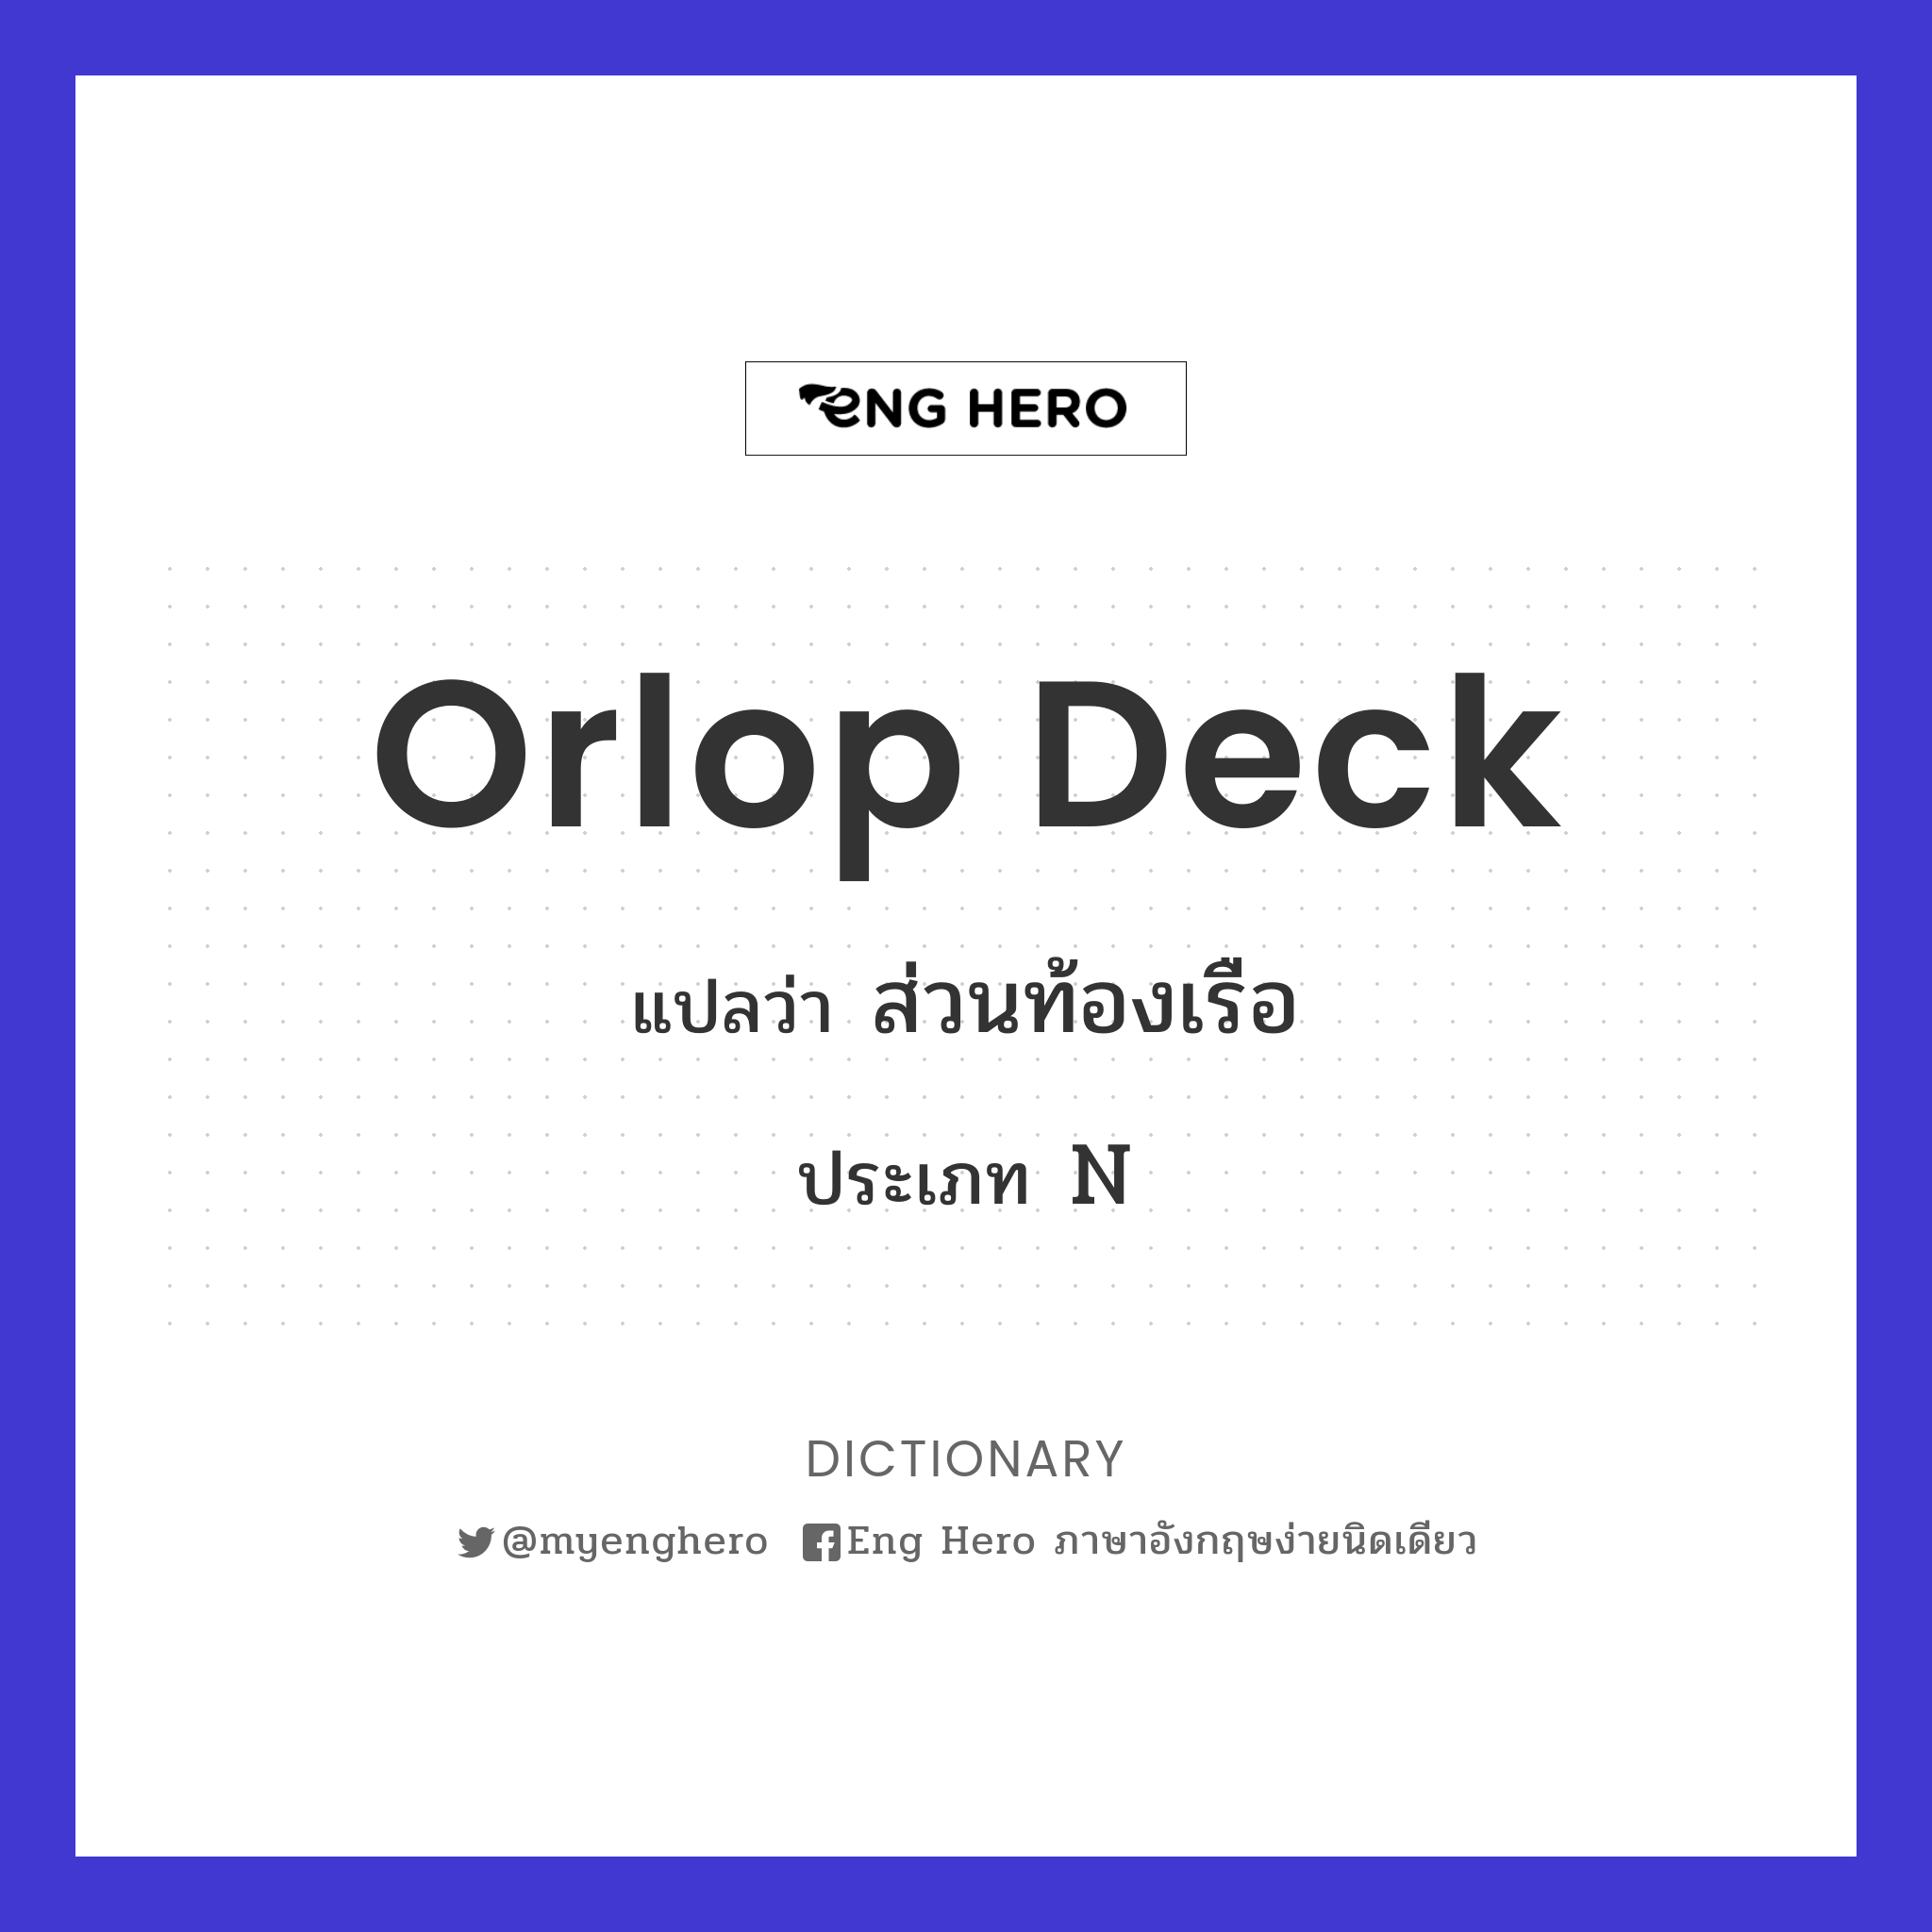 orlop deck